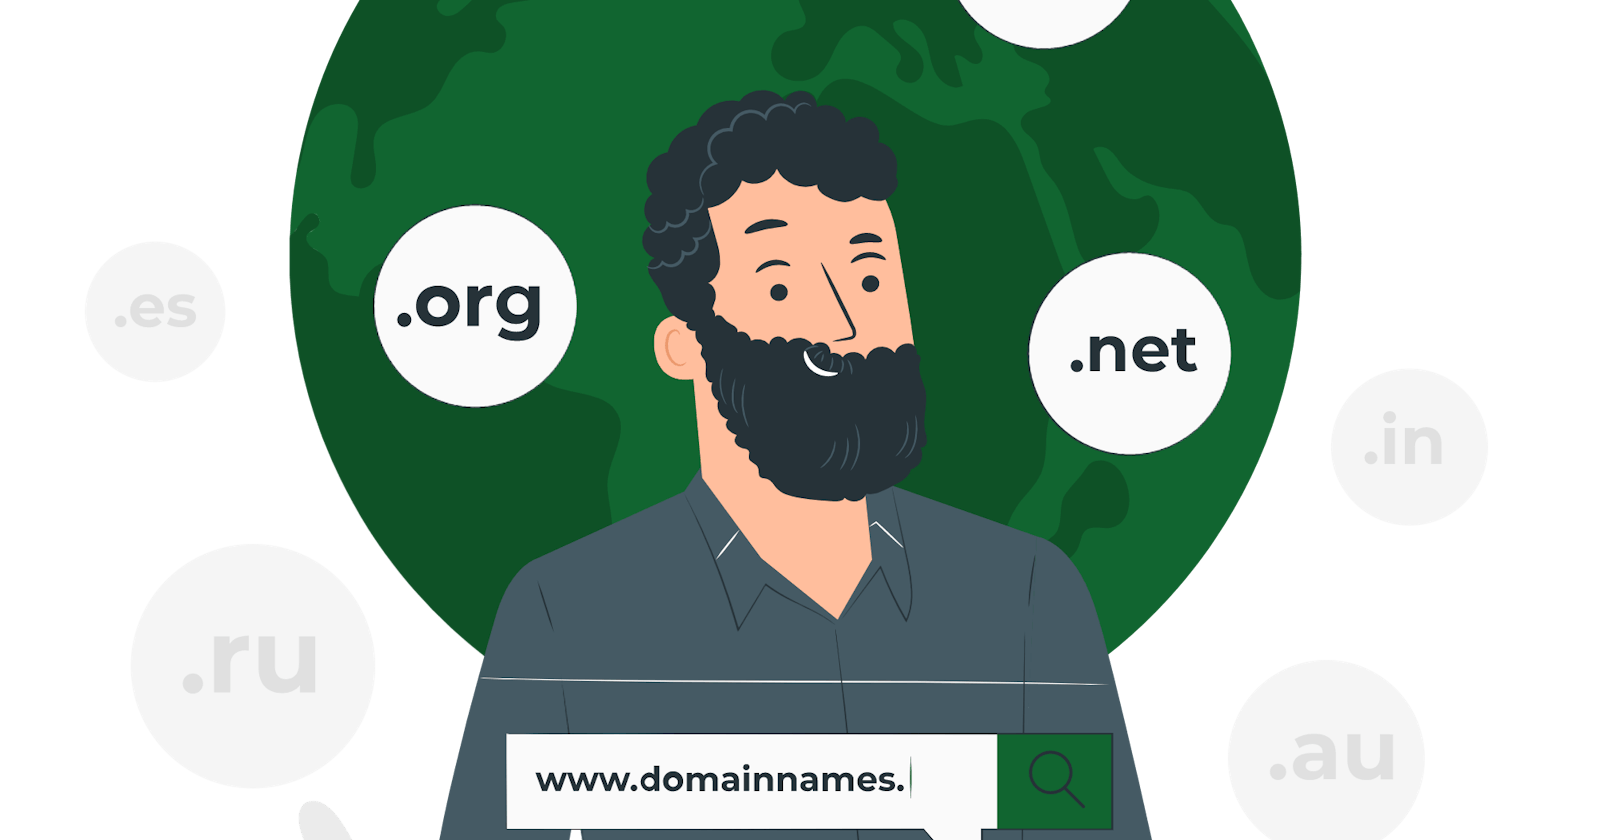 អ្វីទៅជា Domain ? ហេតុអ្វីបានជាយើងត្រូវការវាសម្រាប់ Website យើង?